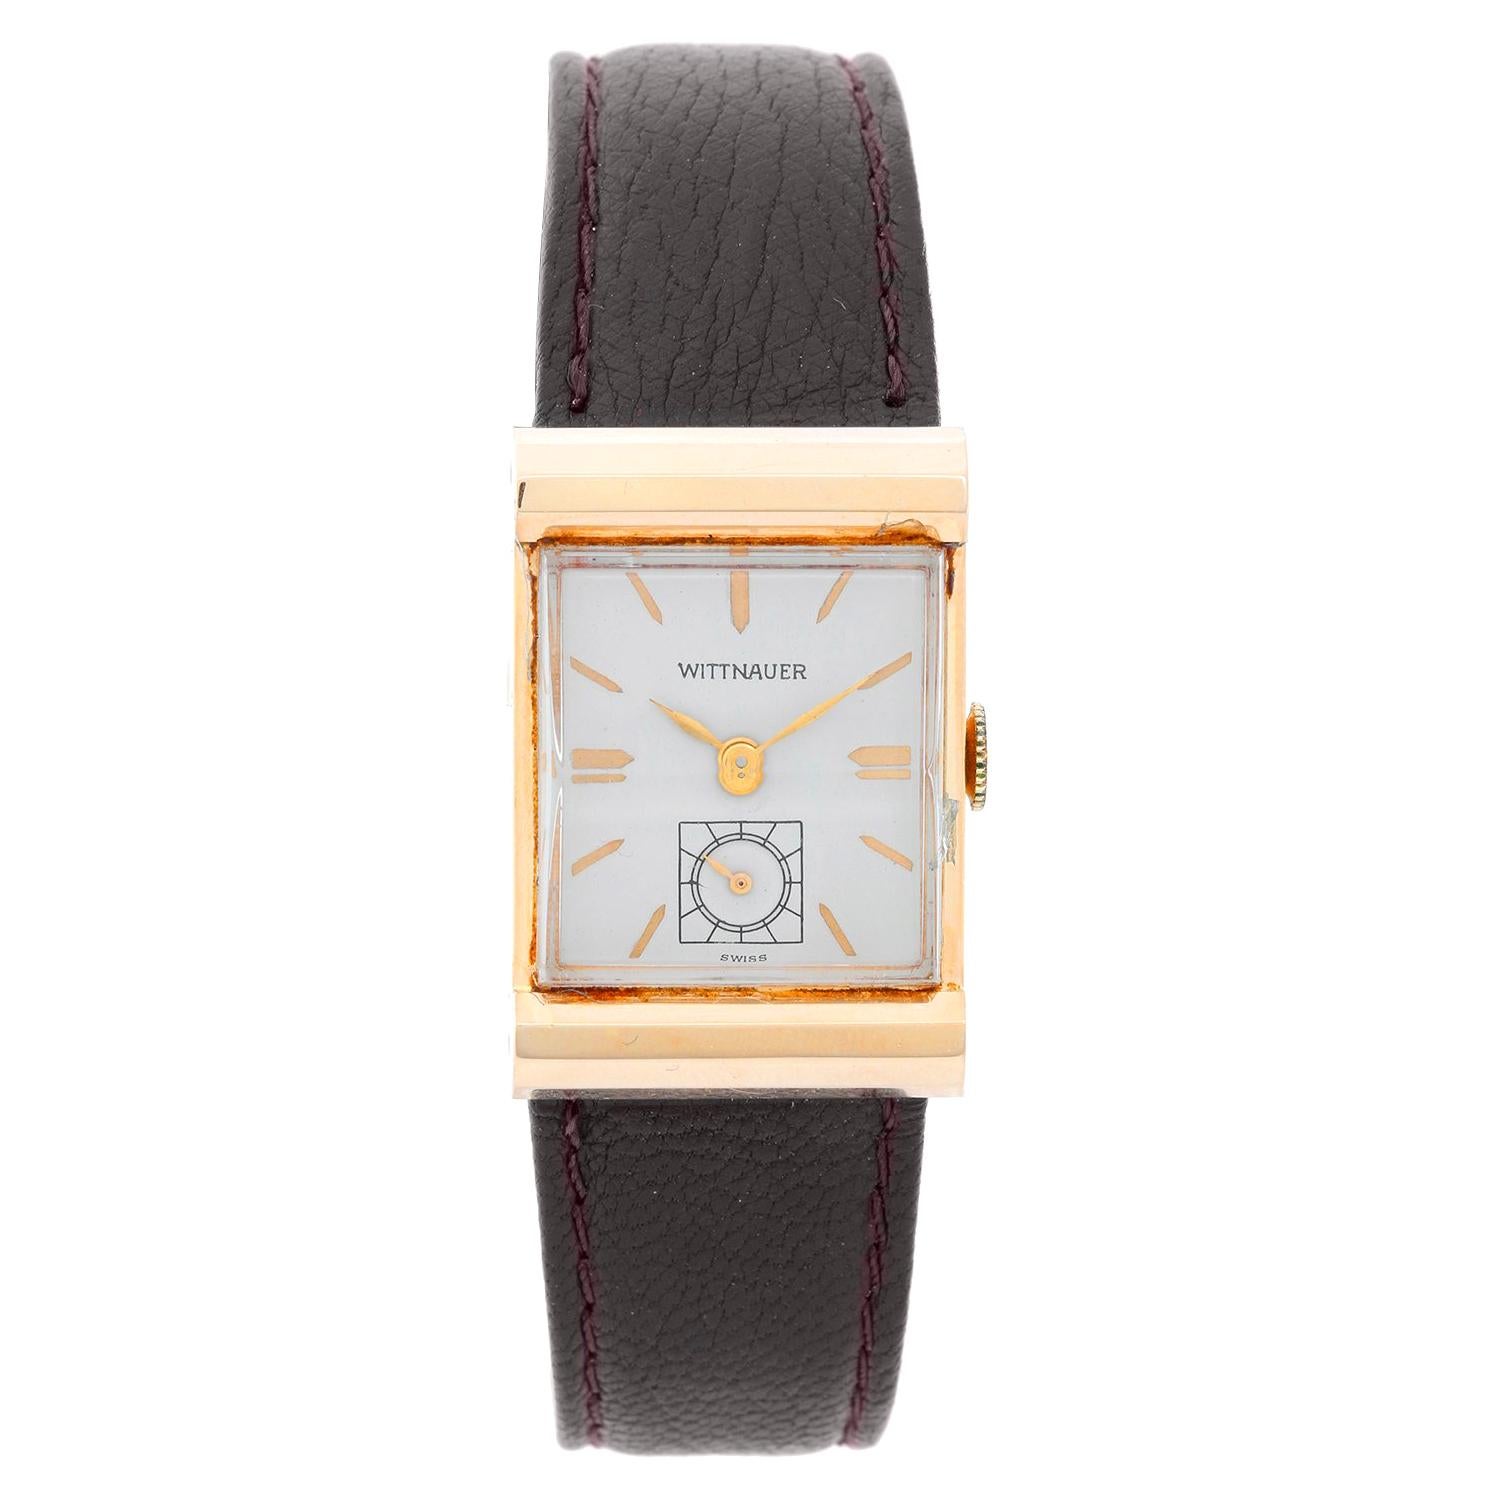 Wittnauer 14 Karat Yellow Gold Vintage Watch